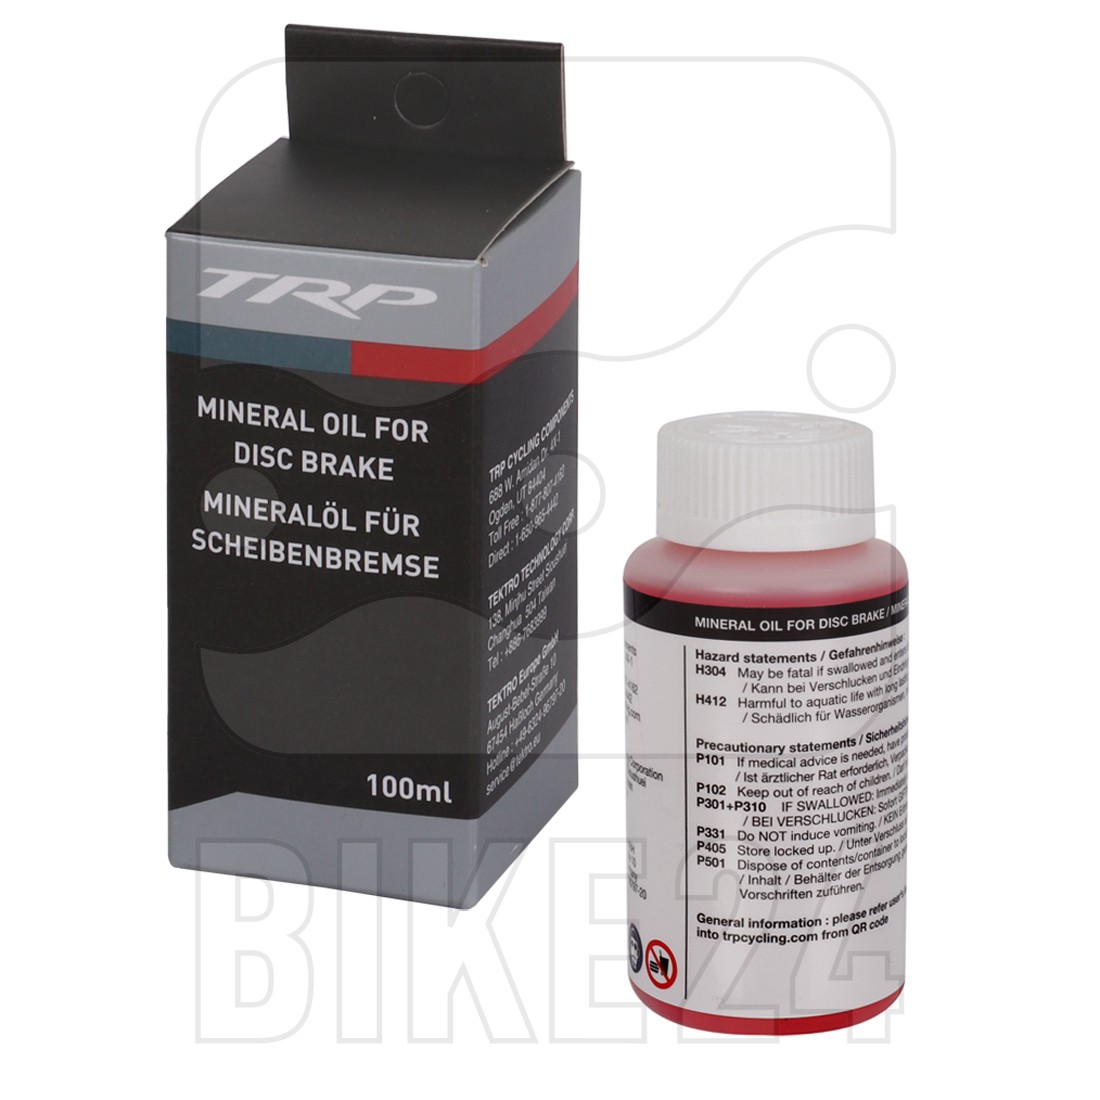 Immagine prodotto da TRP Mineral Oil for Hydraulic Disc Brakes - 100 ml